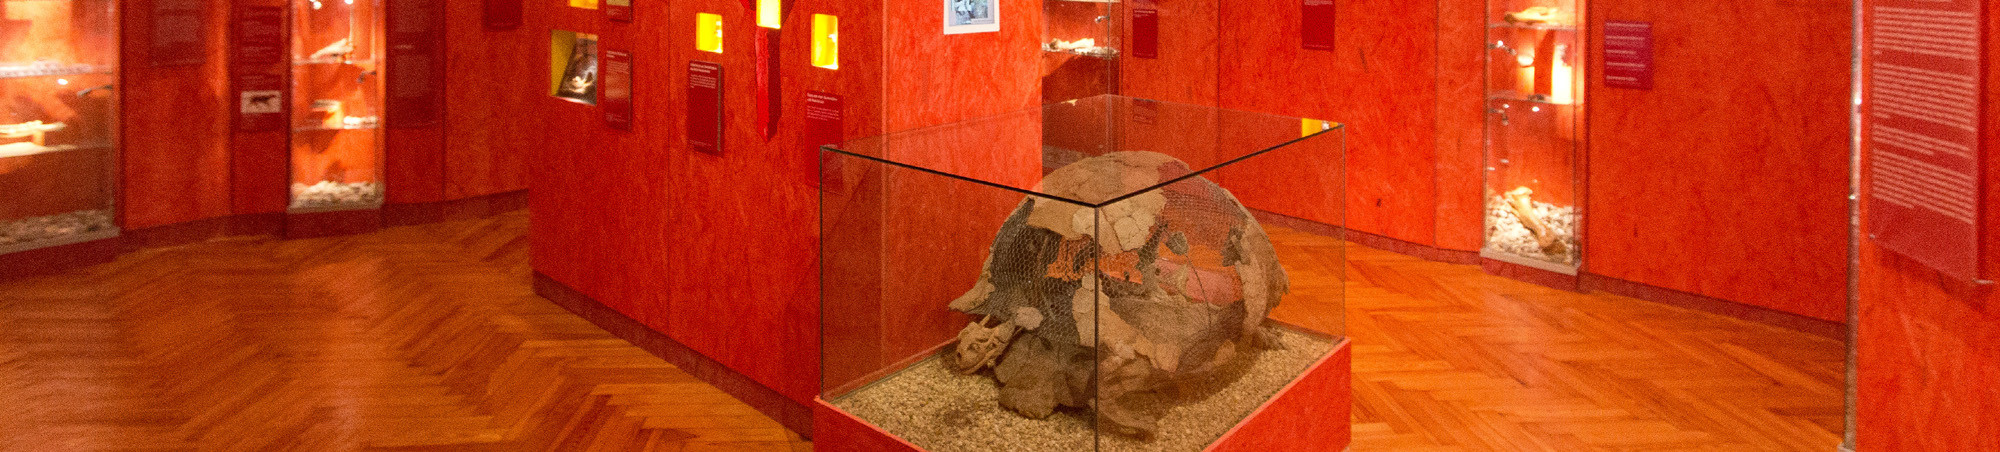 Blick in die Paläontologische Ausstellung mit fossilen Funden. Im Vordergrund das rekonstruierte Skelett einer Risenschildkröte.